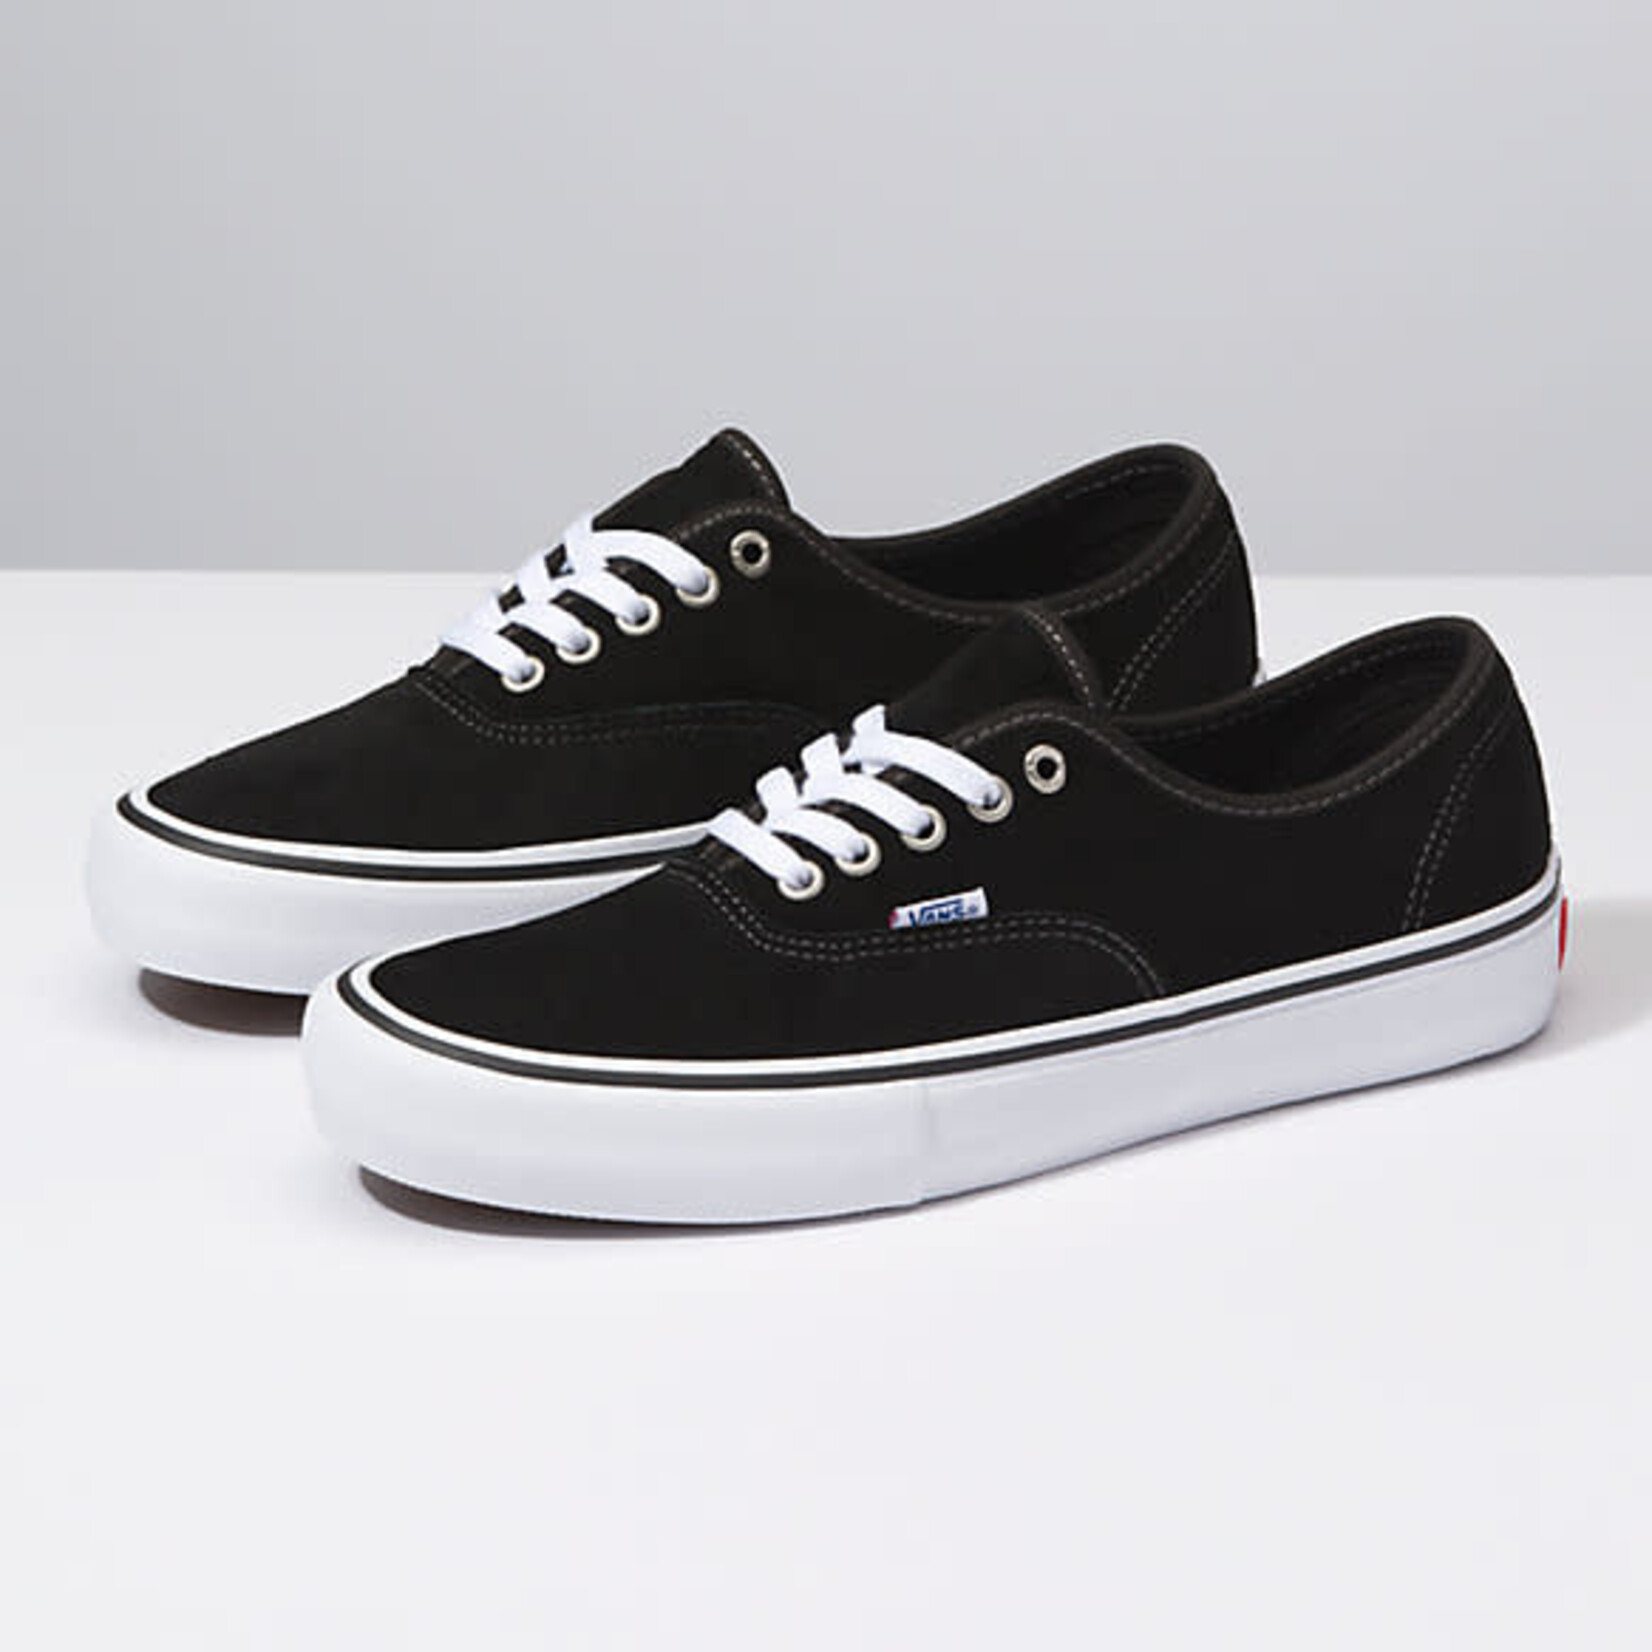 Vans Vans Authentic Pro Skate Shoes (Suede) - Black -